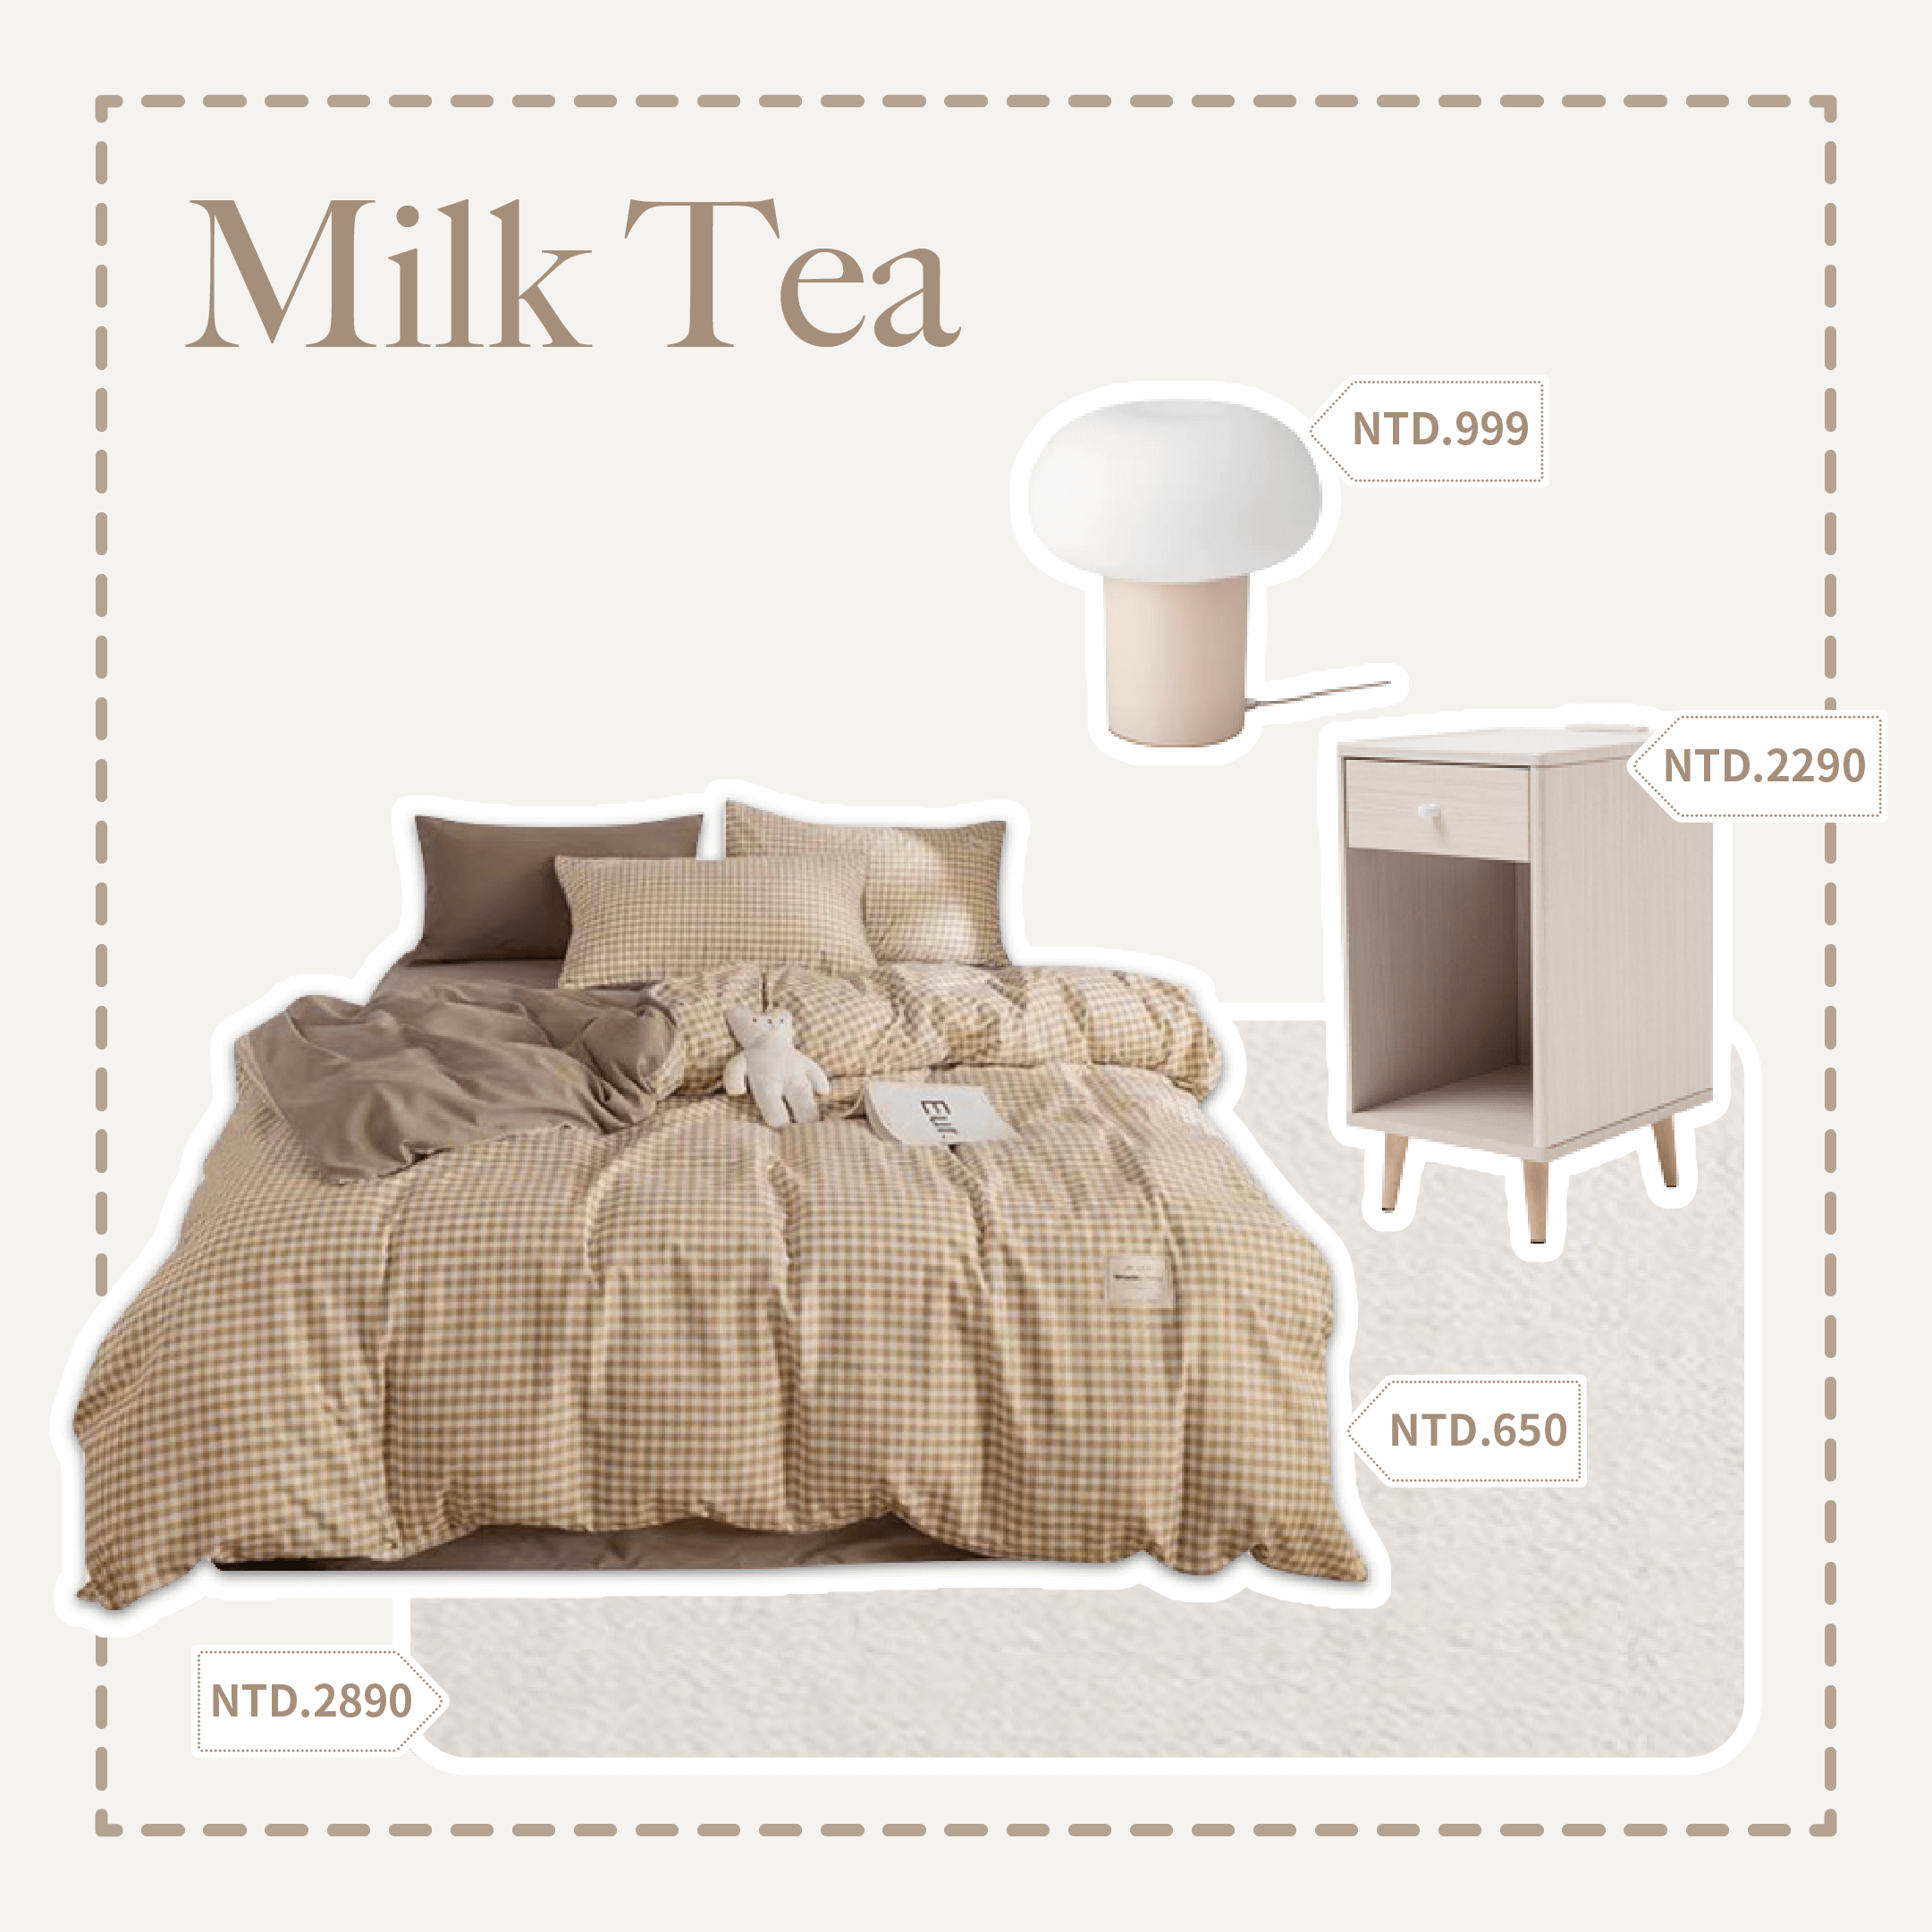 small room decoration - milk tea